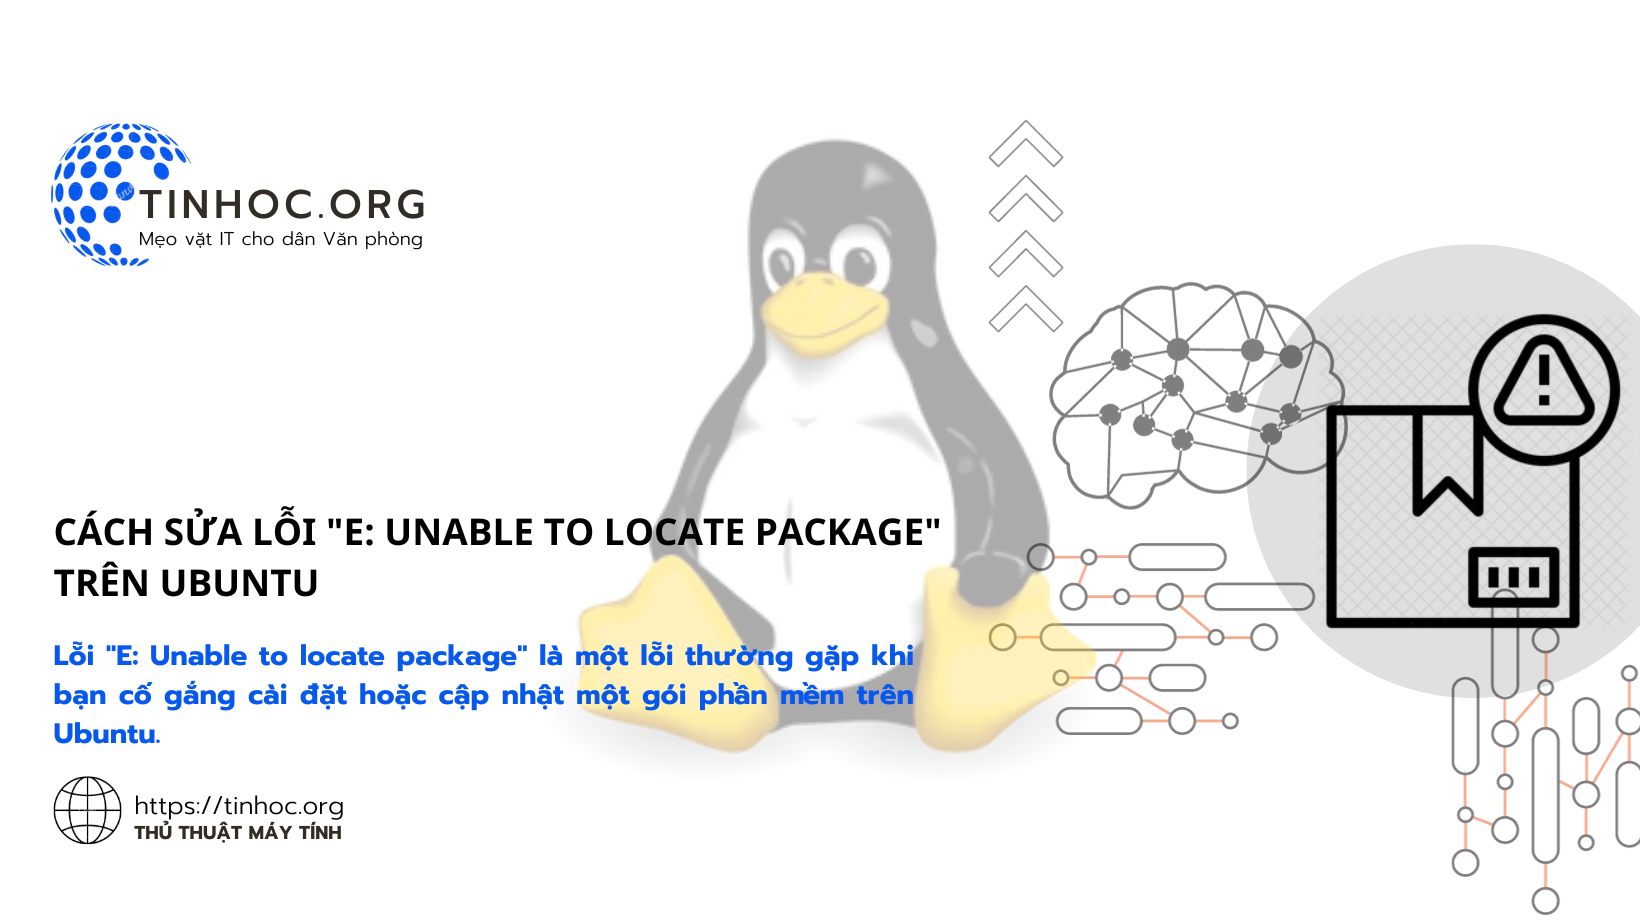 Lỗi "E: Unable to locate package" là một lỗi thường gặp khi bạn cố gắng cài đặt hoặc cập nhật một gói phần mềm trên Ubuntu.